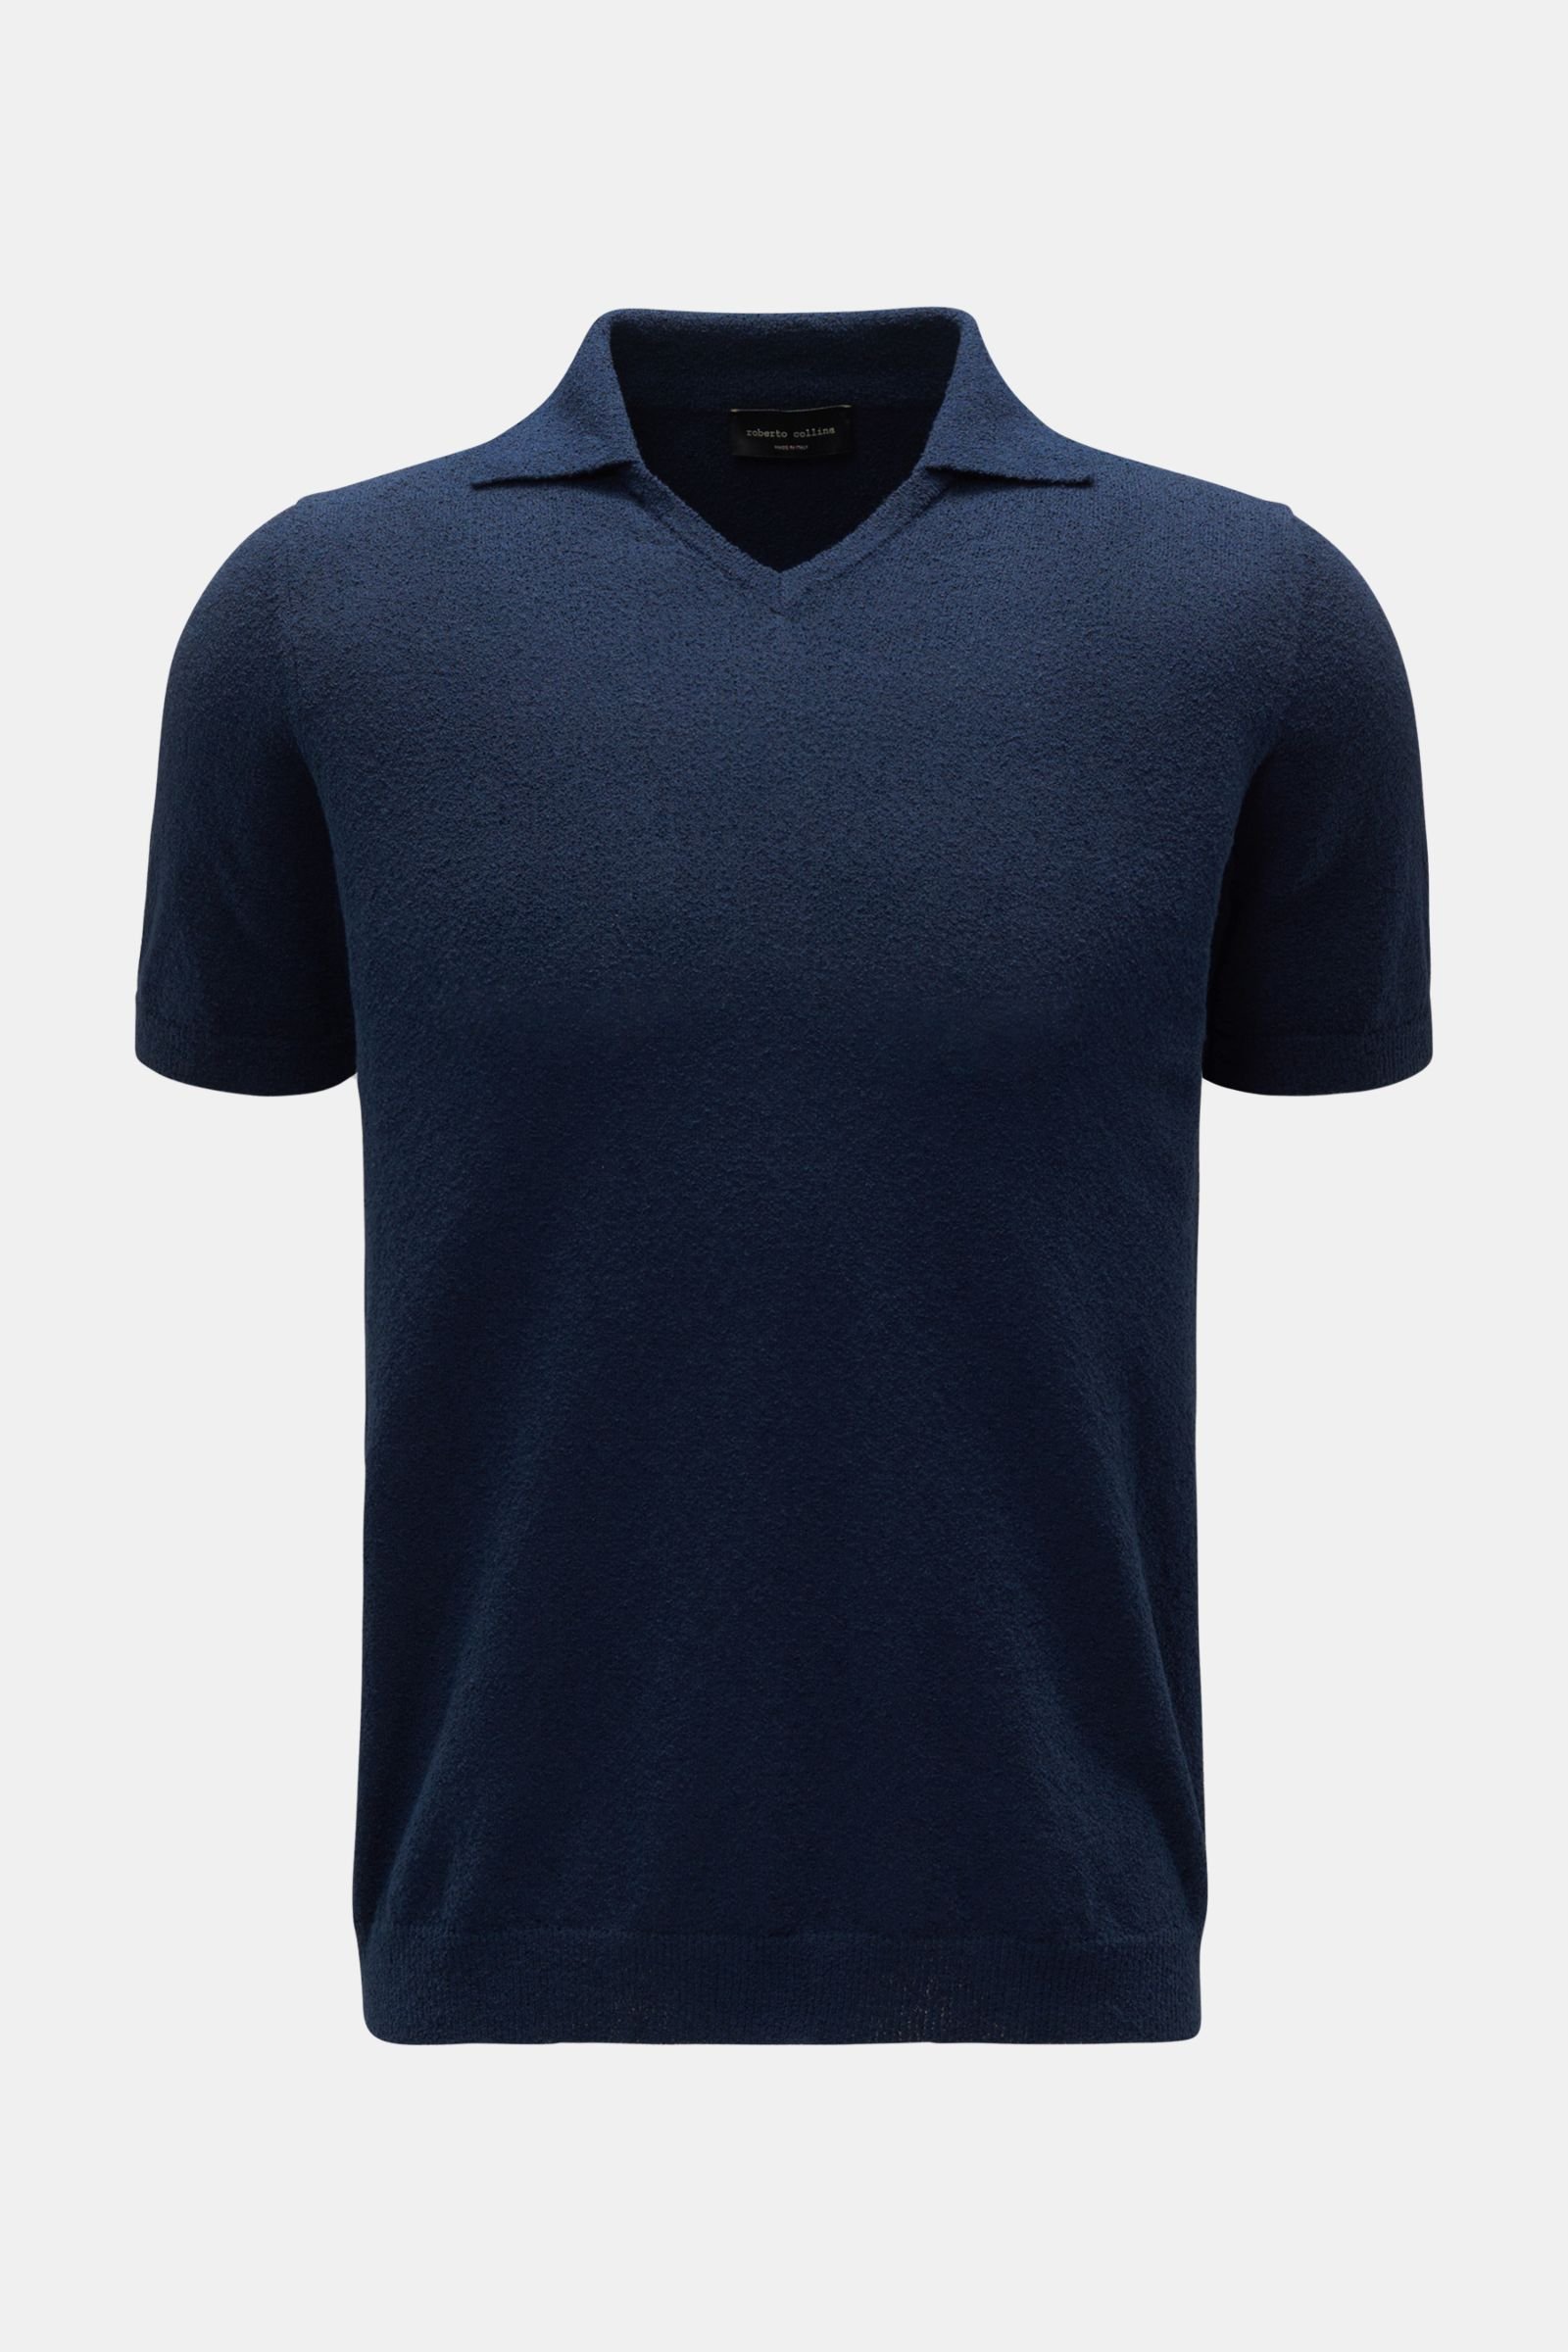 Short sleeve knit polo shirt navy 